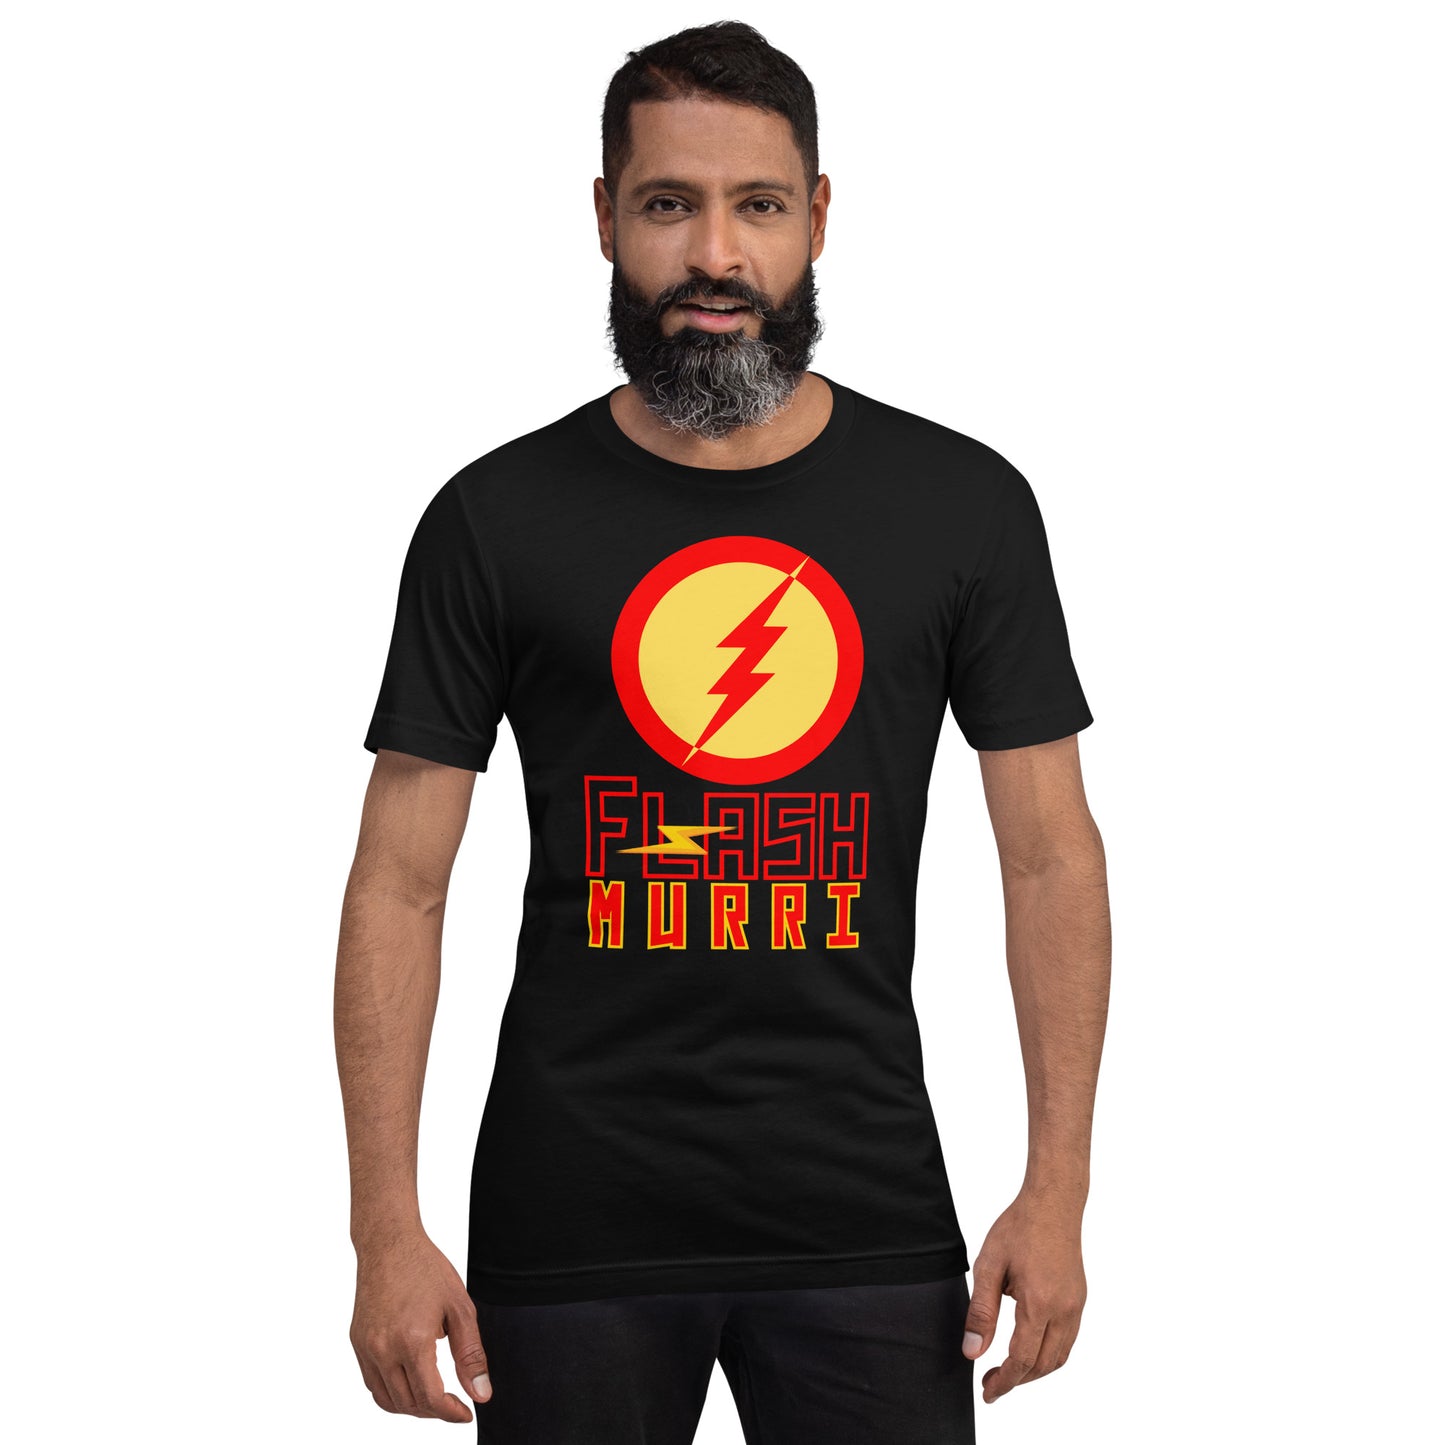 Flash Murri Unisex t-shirt